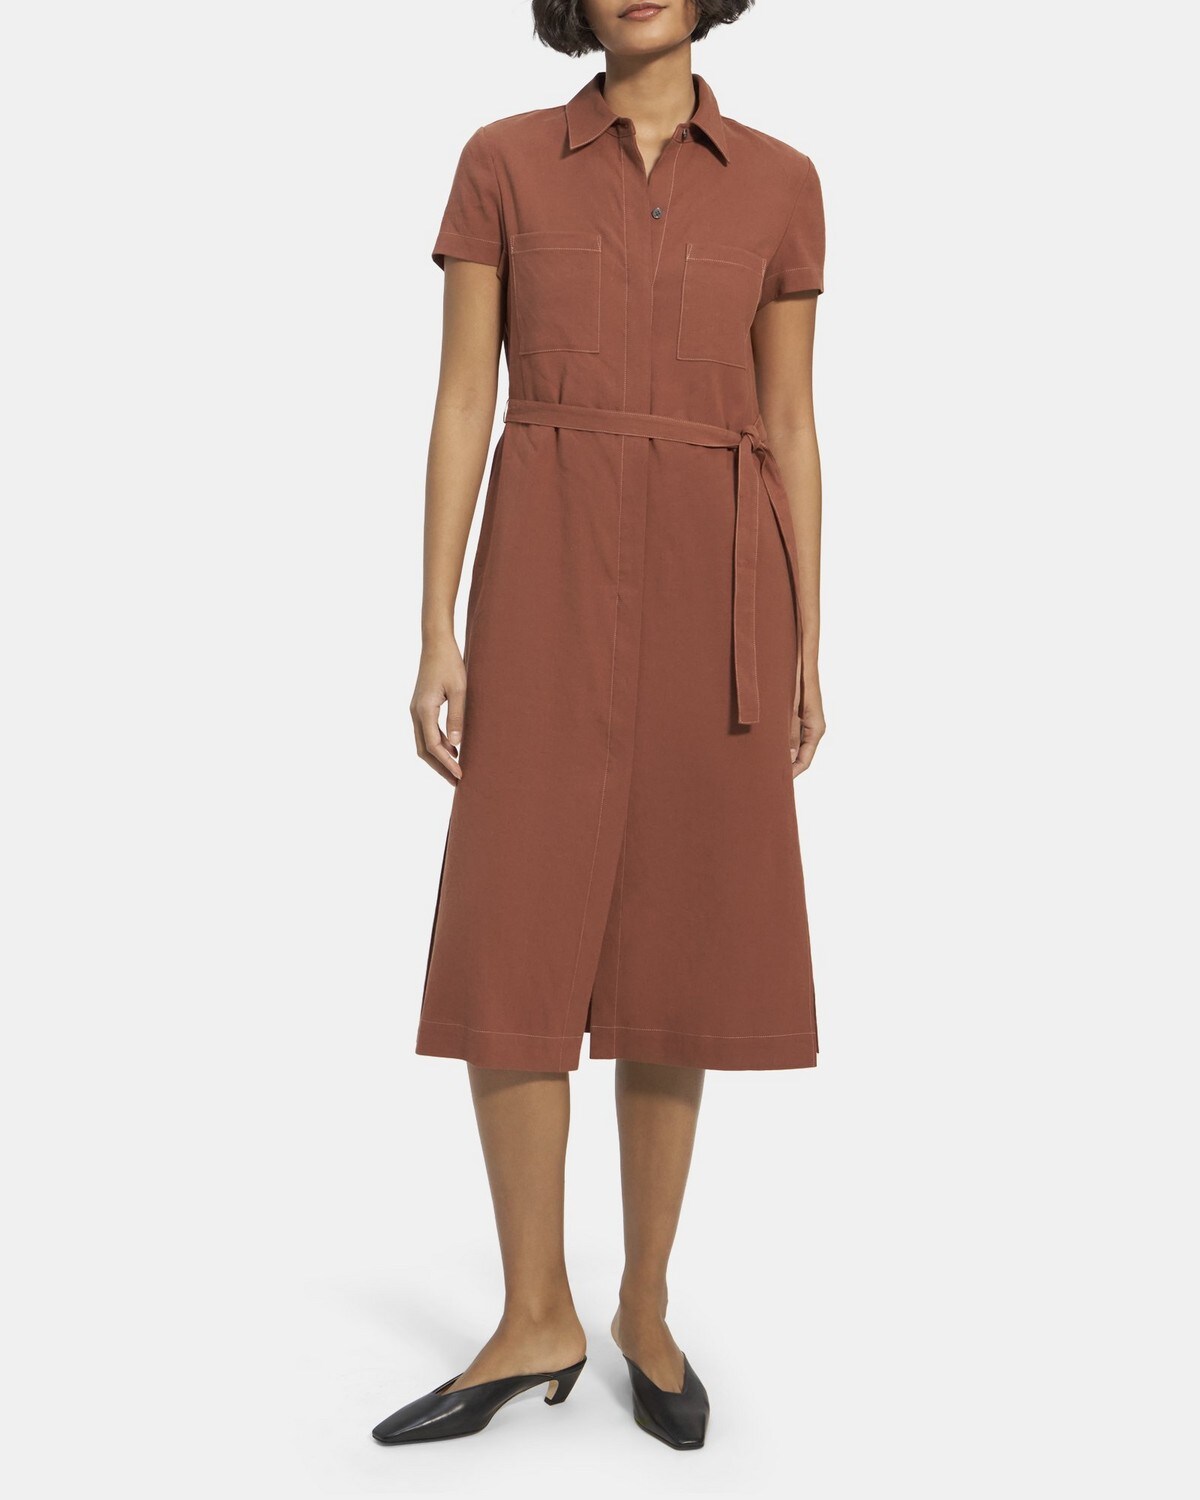 띠어리 린넨 셔츠 원피스 M033603R Theory Short-Sleeve Shirt Dress in Linen,TERRACOTTA